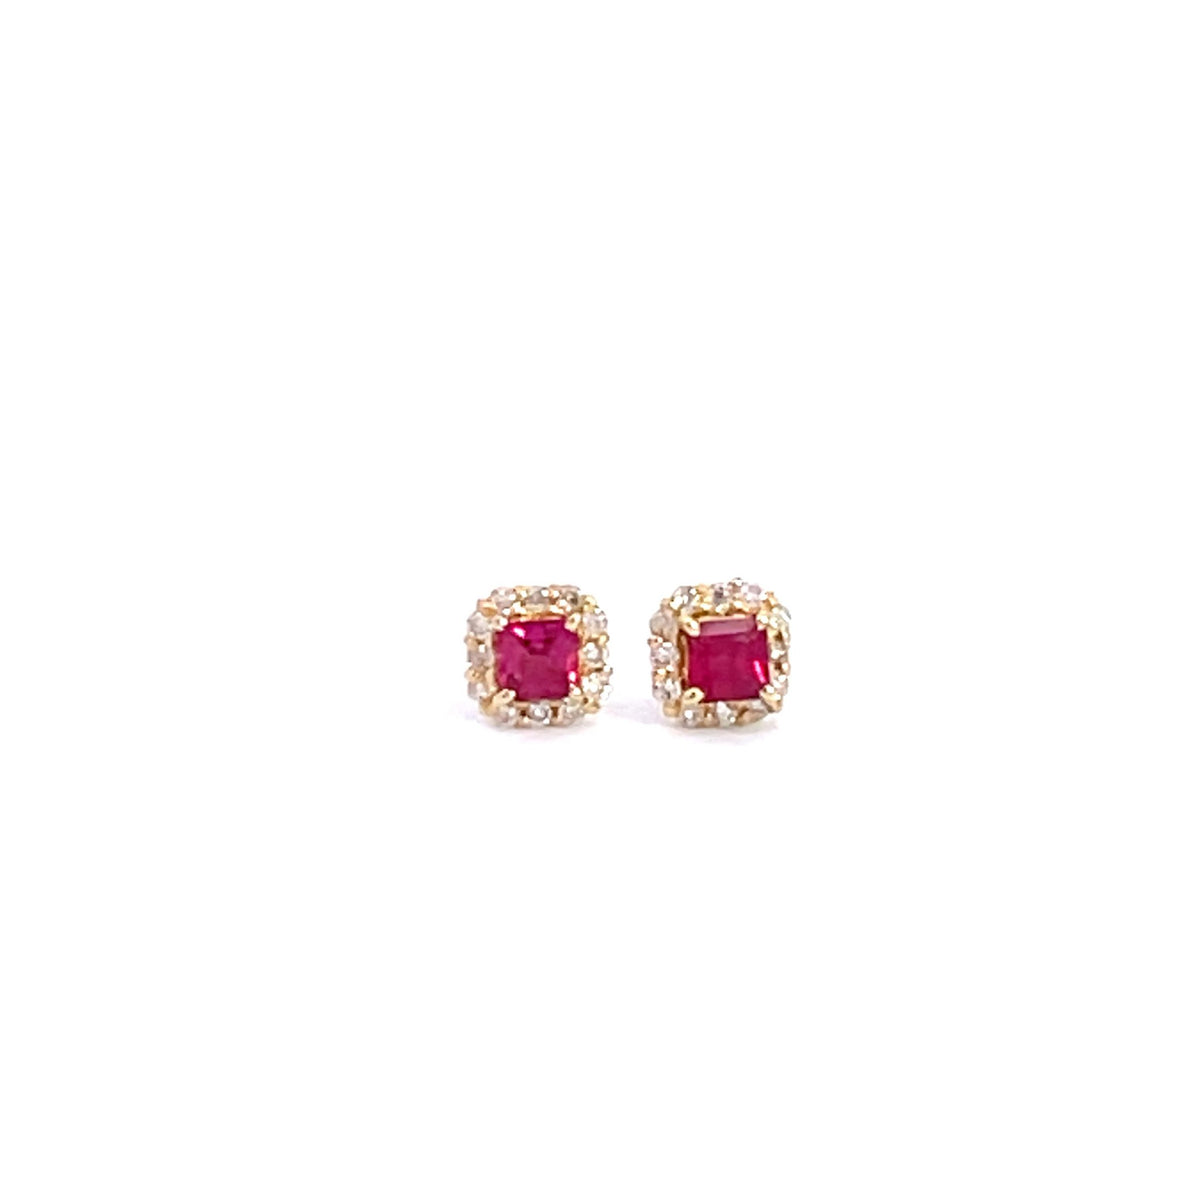 Yellow Gold and Ruby & Diamond Earrings - Markbridge Jewellers